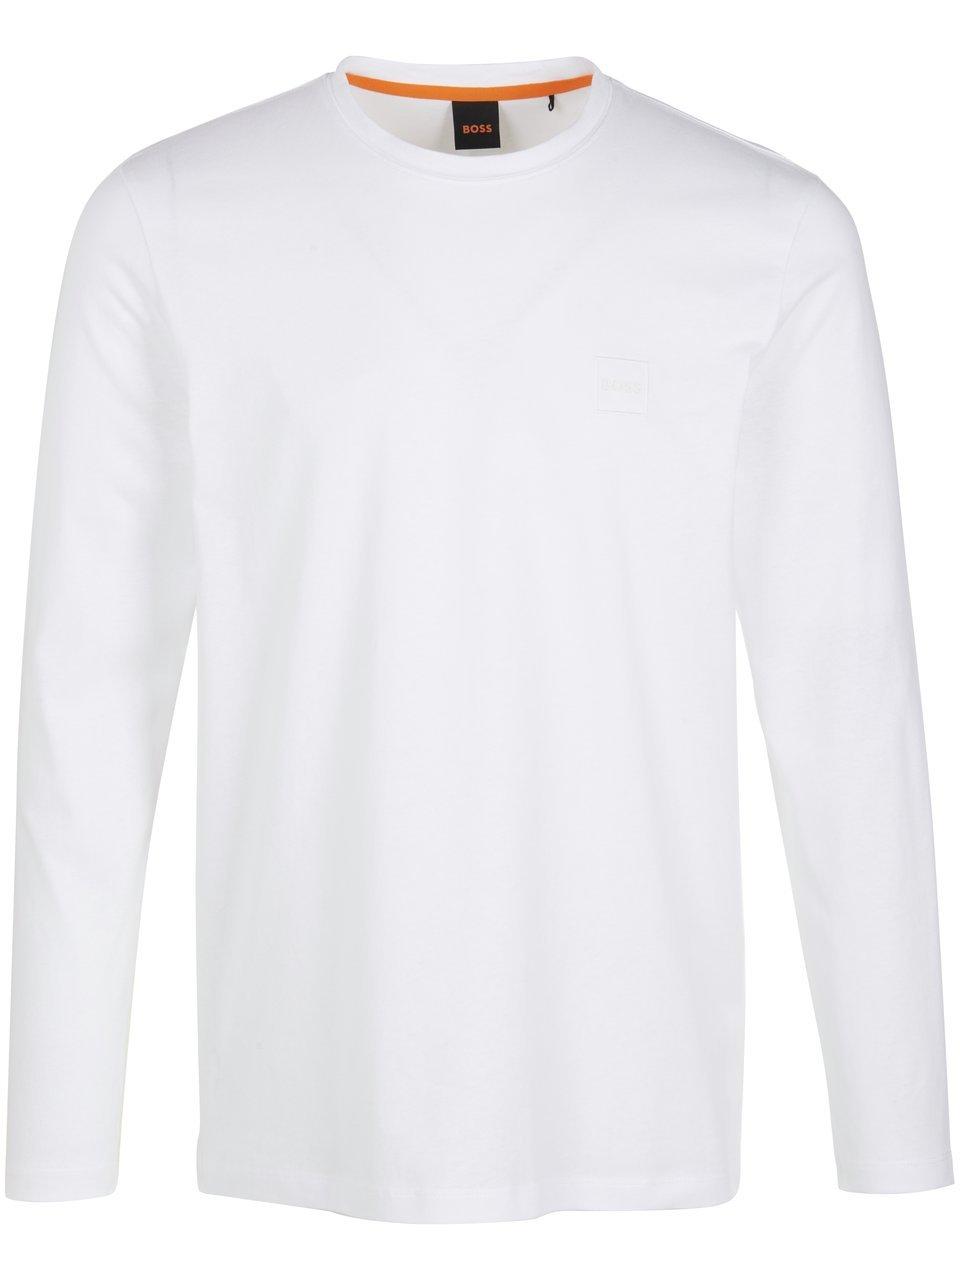 BOSS Tacks T-shirt Heren - White - XXL